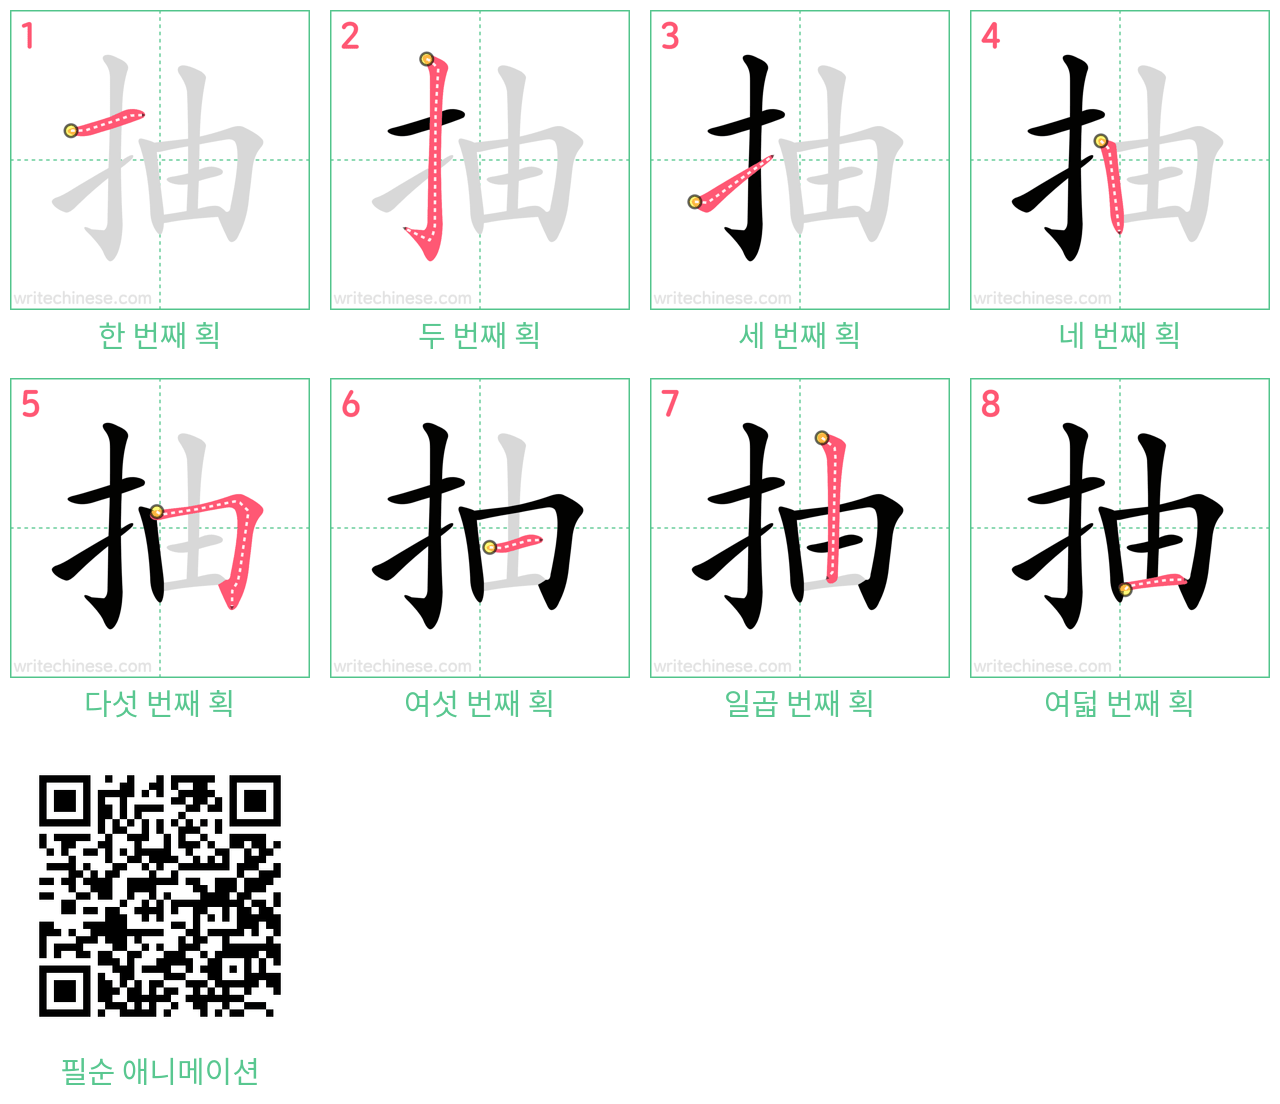 抽 step-by-step stroke order diagrams